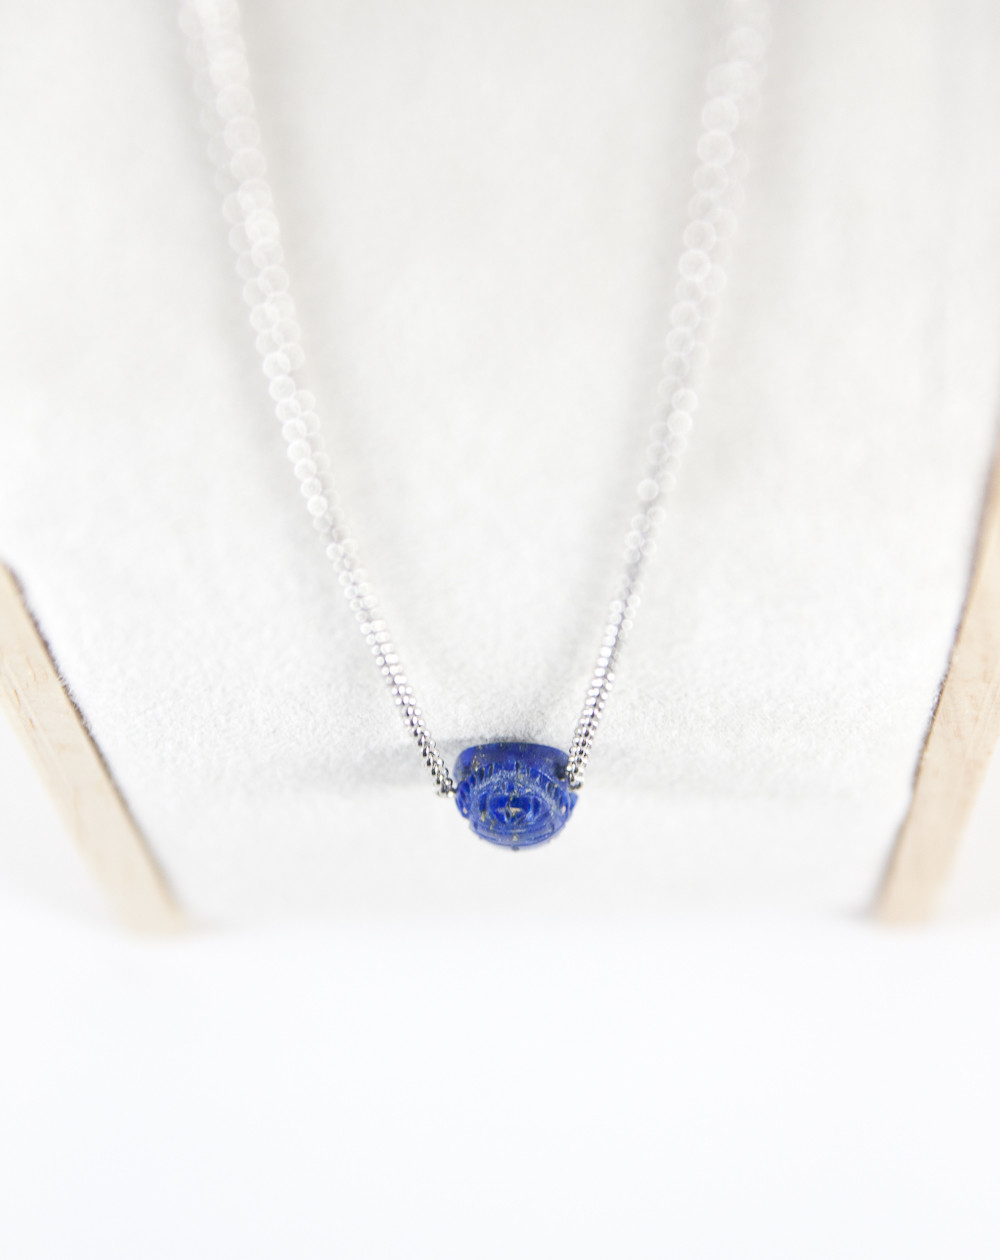 Scarabée en Lapis Lazuli sur chaine en argent rhodié, Sanùk création, Bayonne